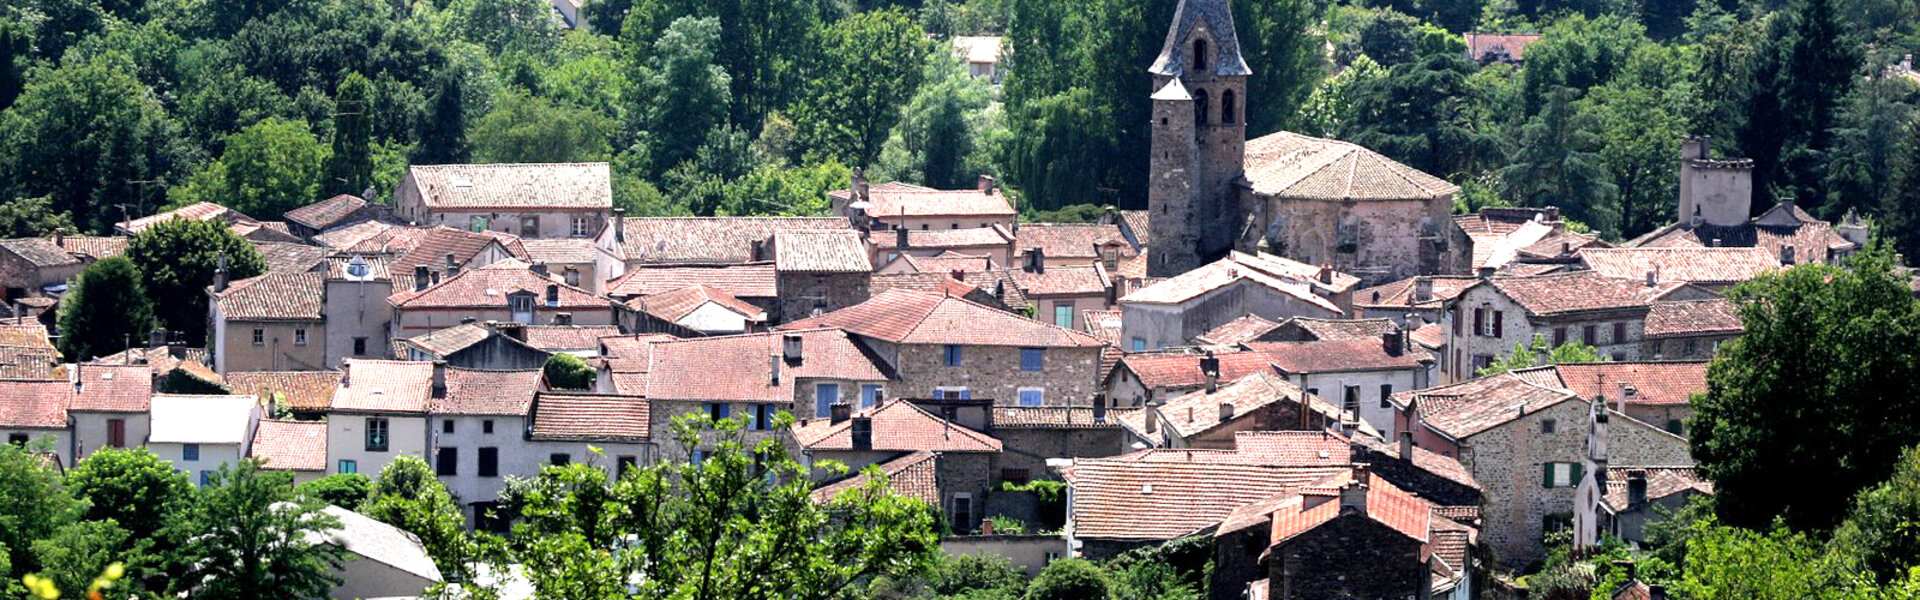 Bienvenue sur le site officiel de la Commune de Monestiés - Tarn